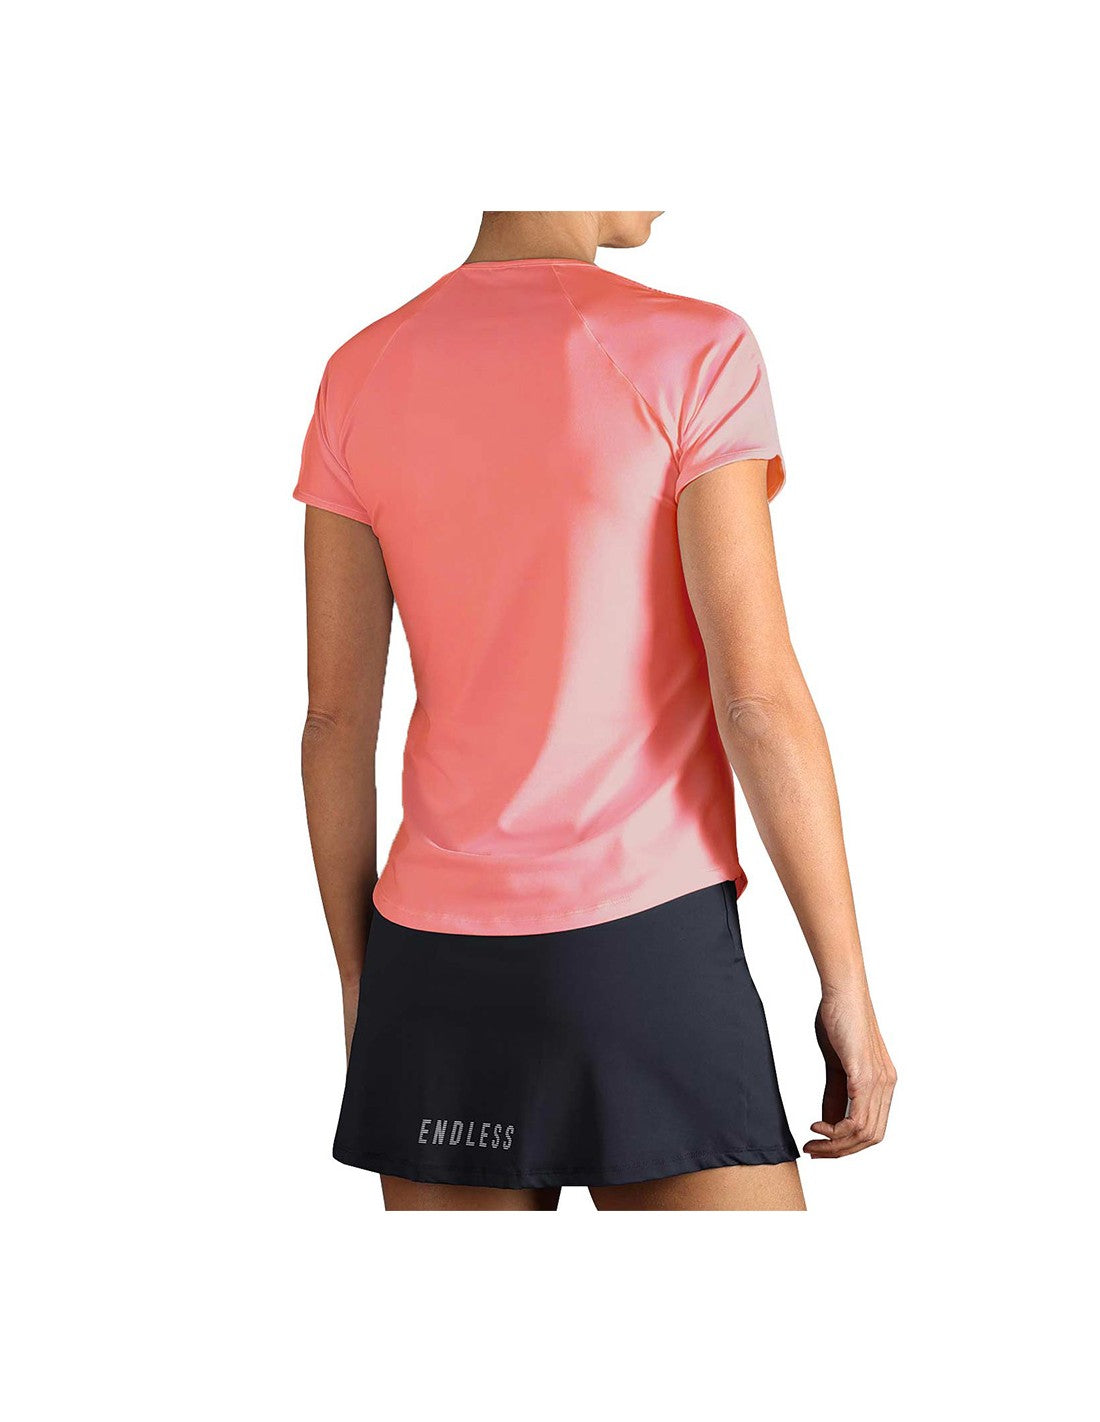 Womens Tennis Mesh Short Sleeve T-Shirt